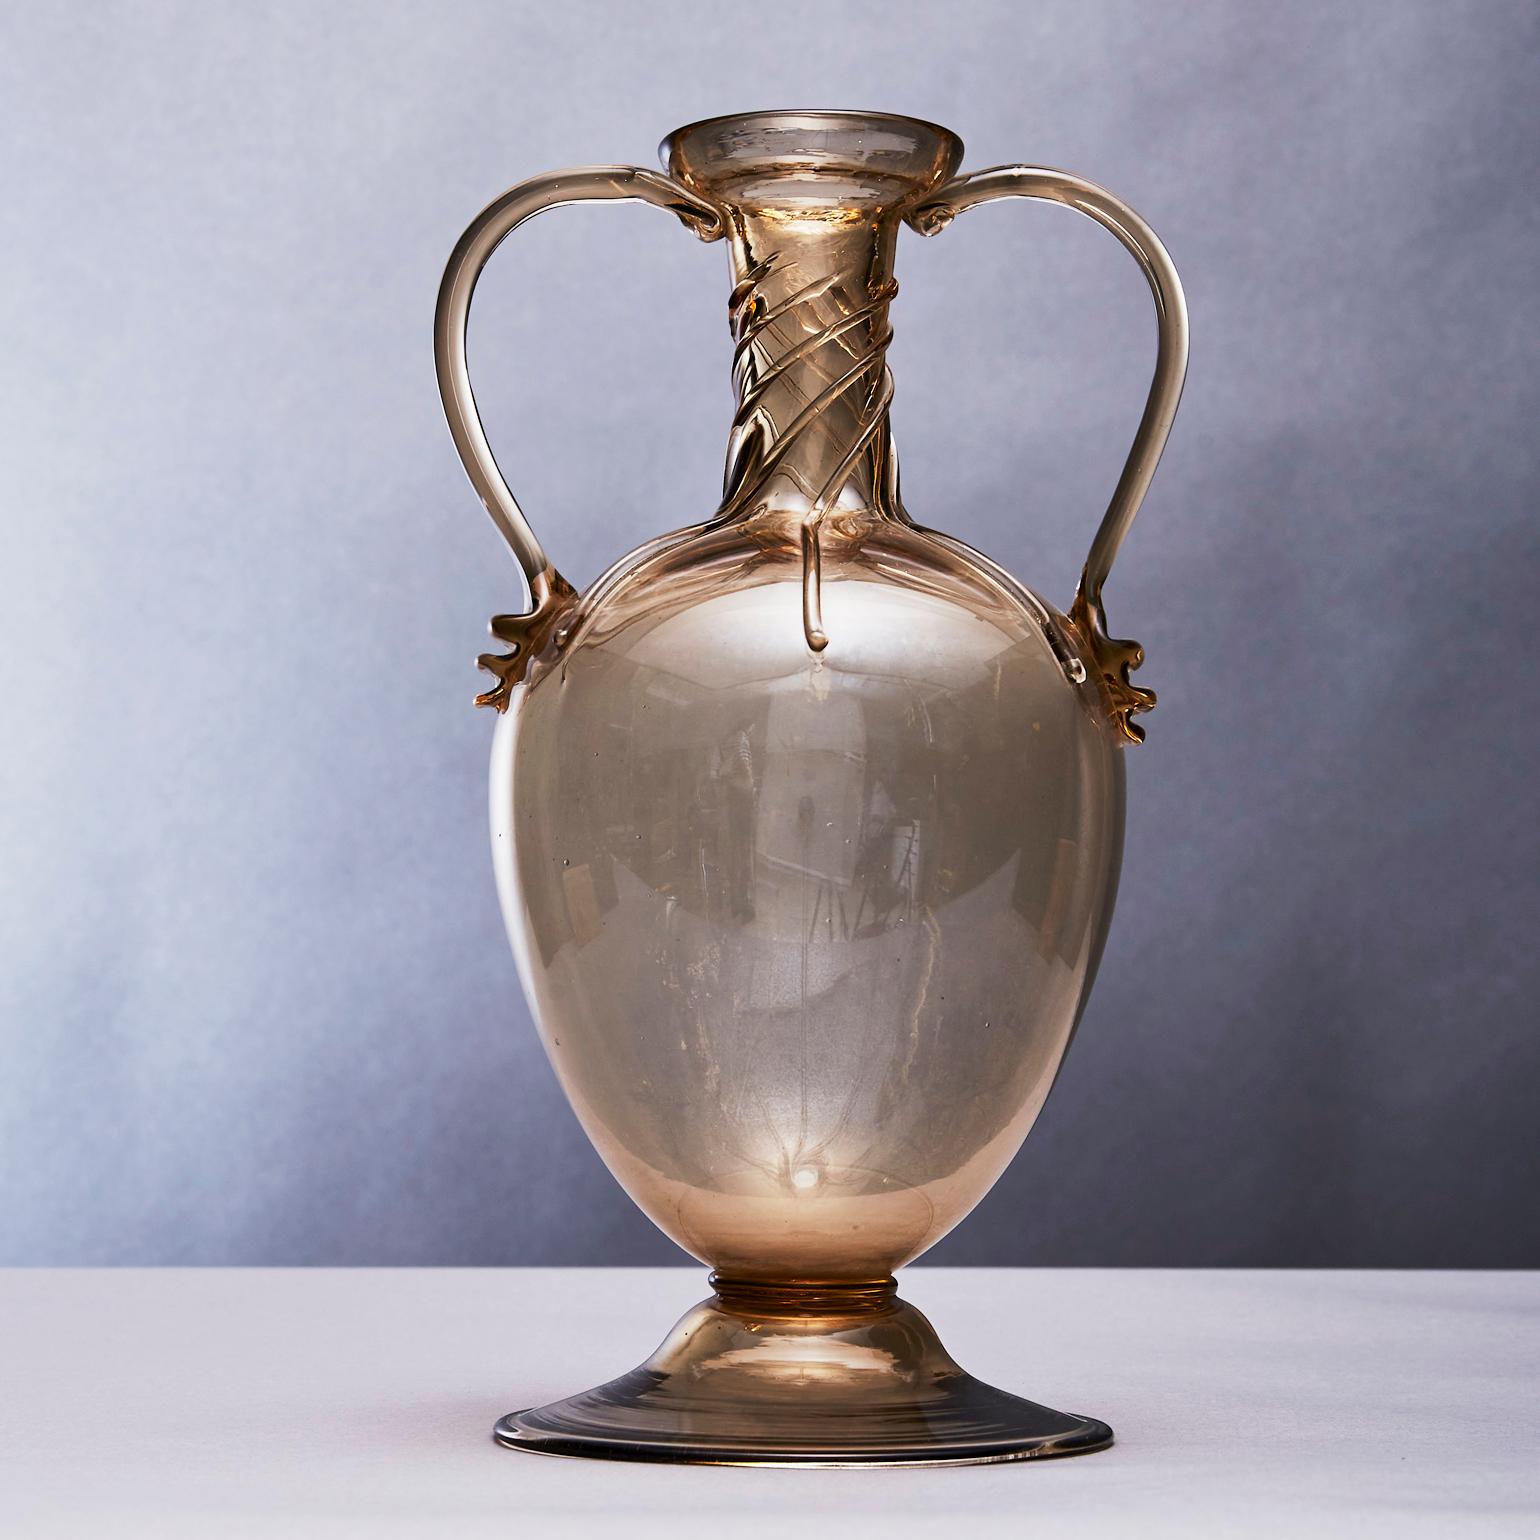 Le vase Soffiato à double anse est attribué à Vittorio Zecchin (1878-1947), qui a laissé une empreinte durable sur le verre du XXe siècle. Les producteurs MVM Cappellin étaient l'une des entreprises les plus importantes pour le verre italien. La